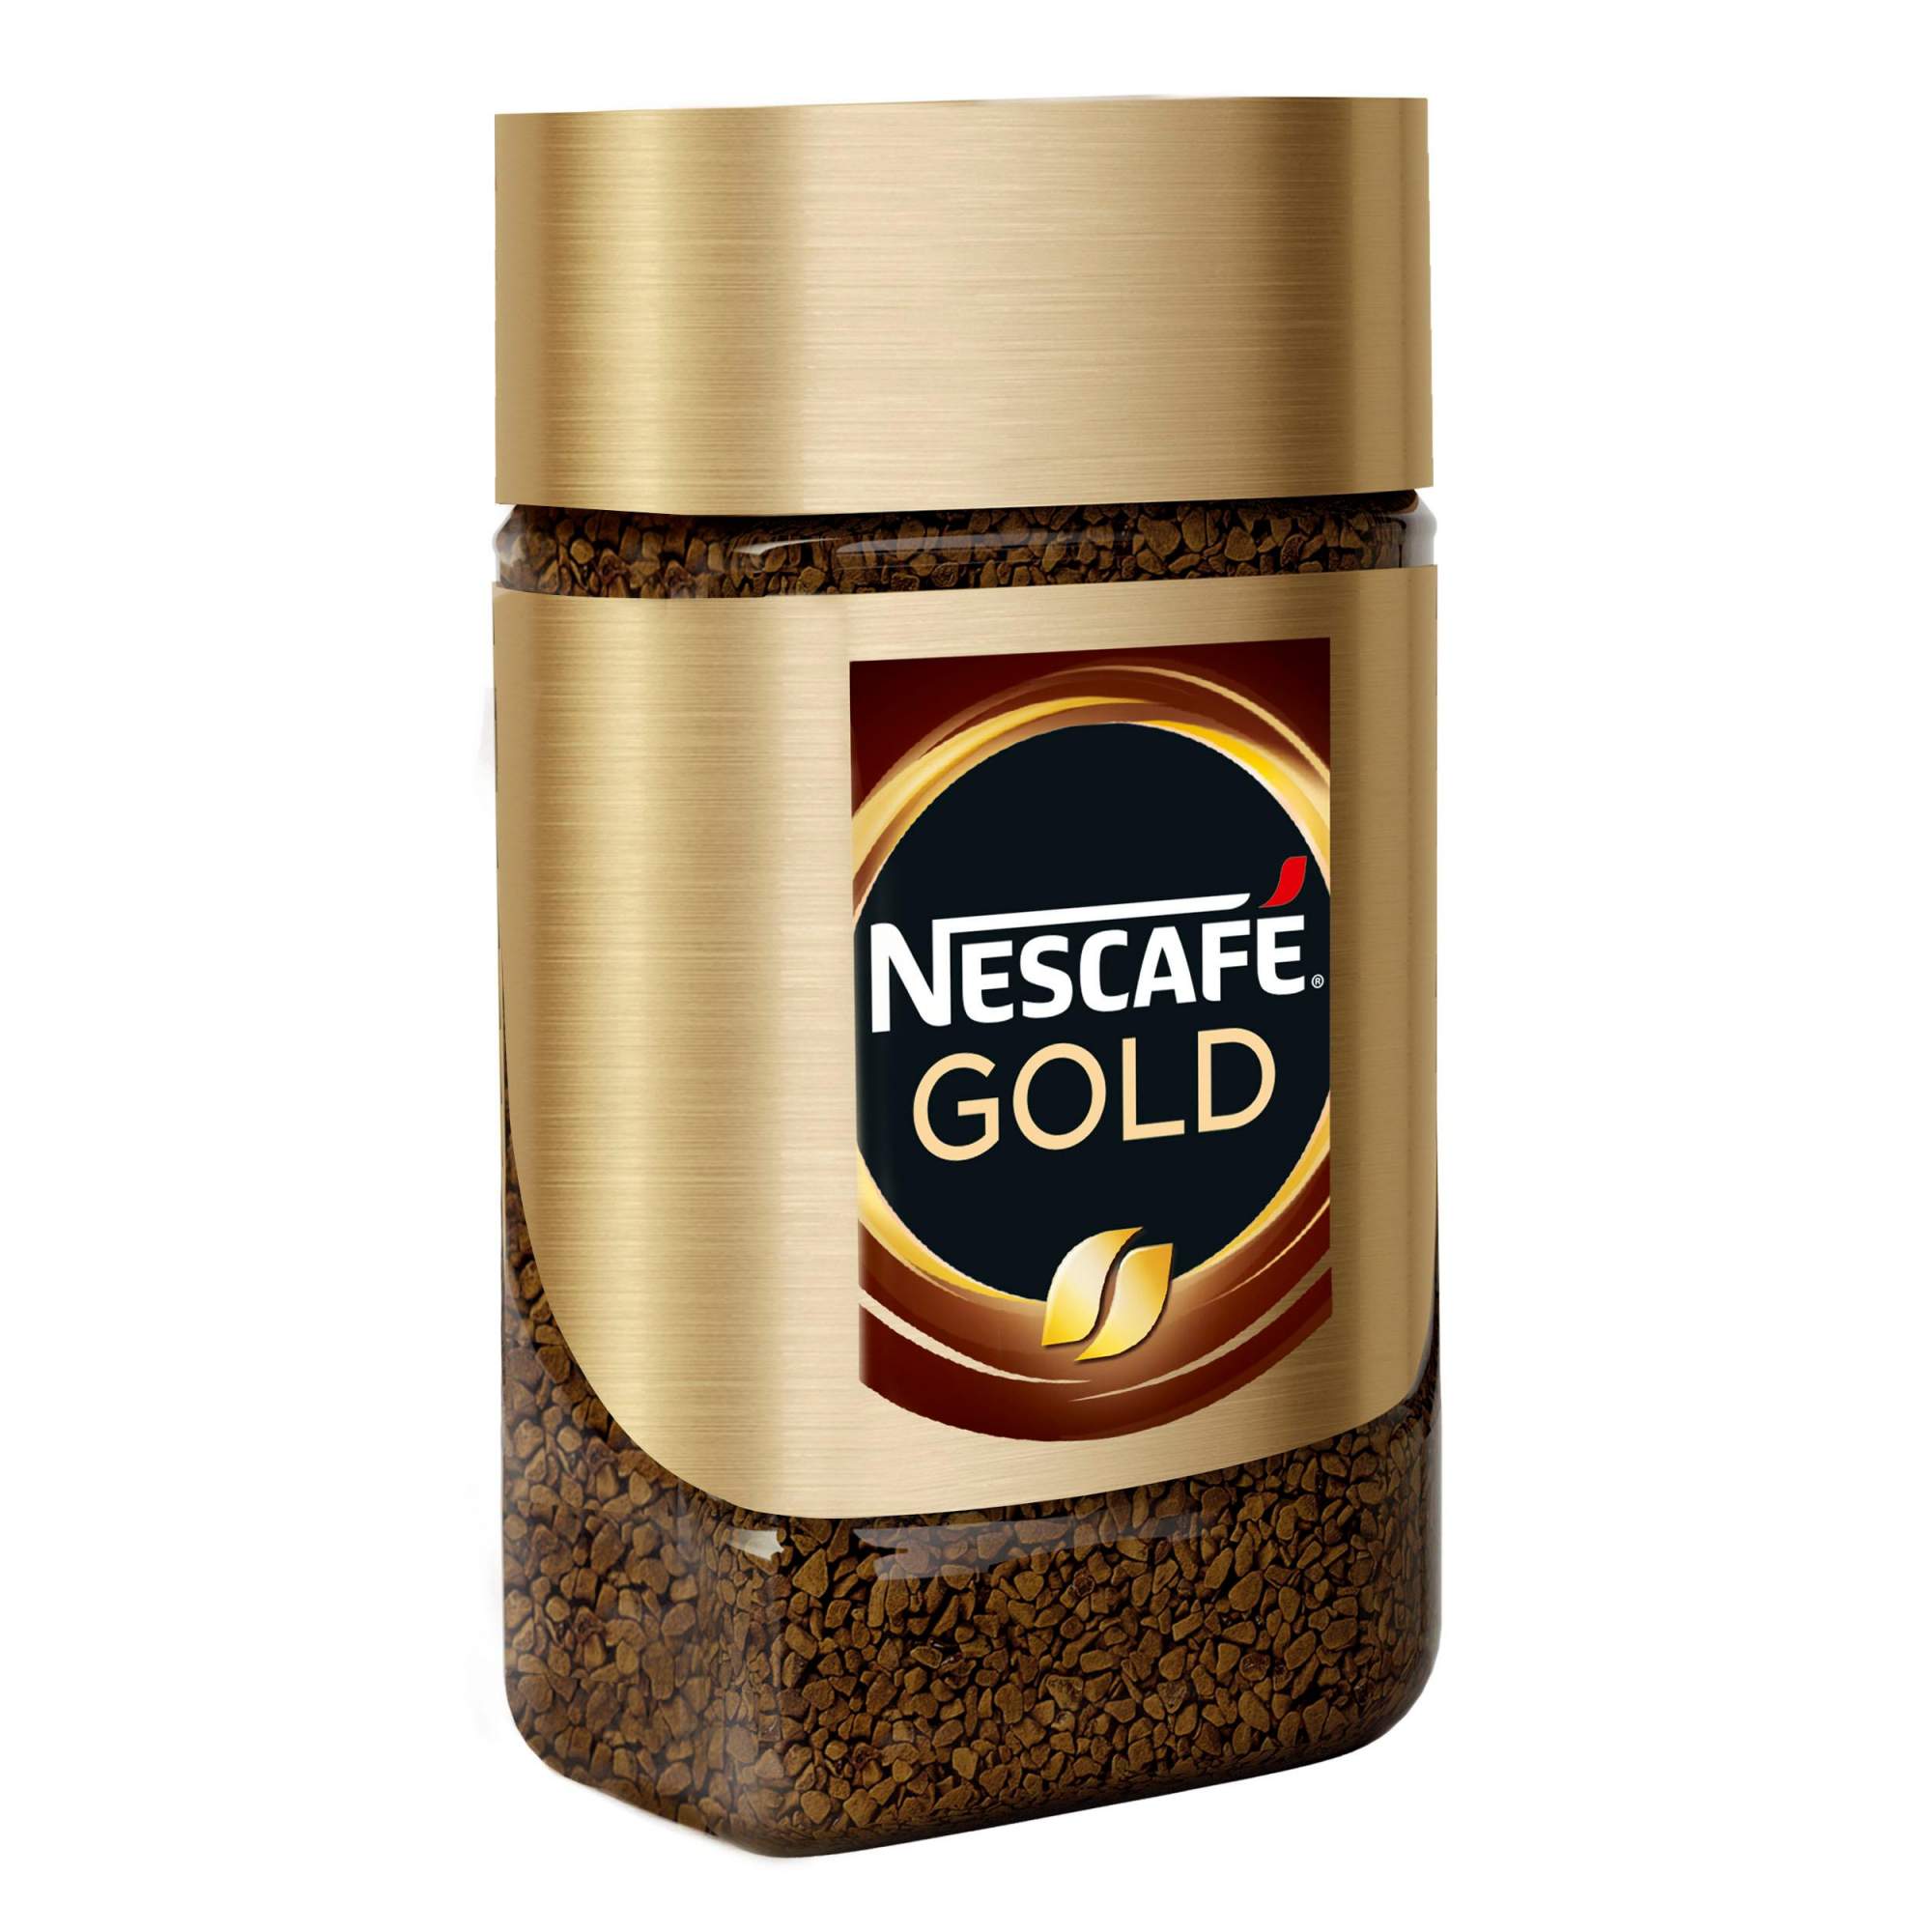 Nescafe gold сублимированный. Кофе Нескафе Голд 190 гр. Nescafe Gold 47.5. Кофе Нескафе Голд 47,5 гр. Нескафе Голд 190 гр стекло.